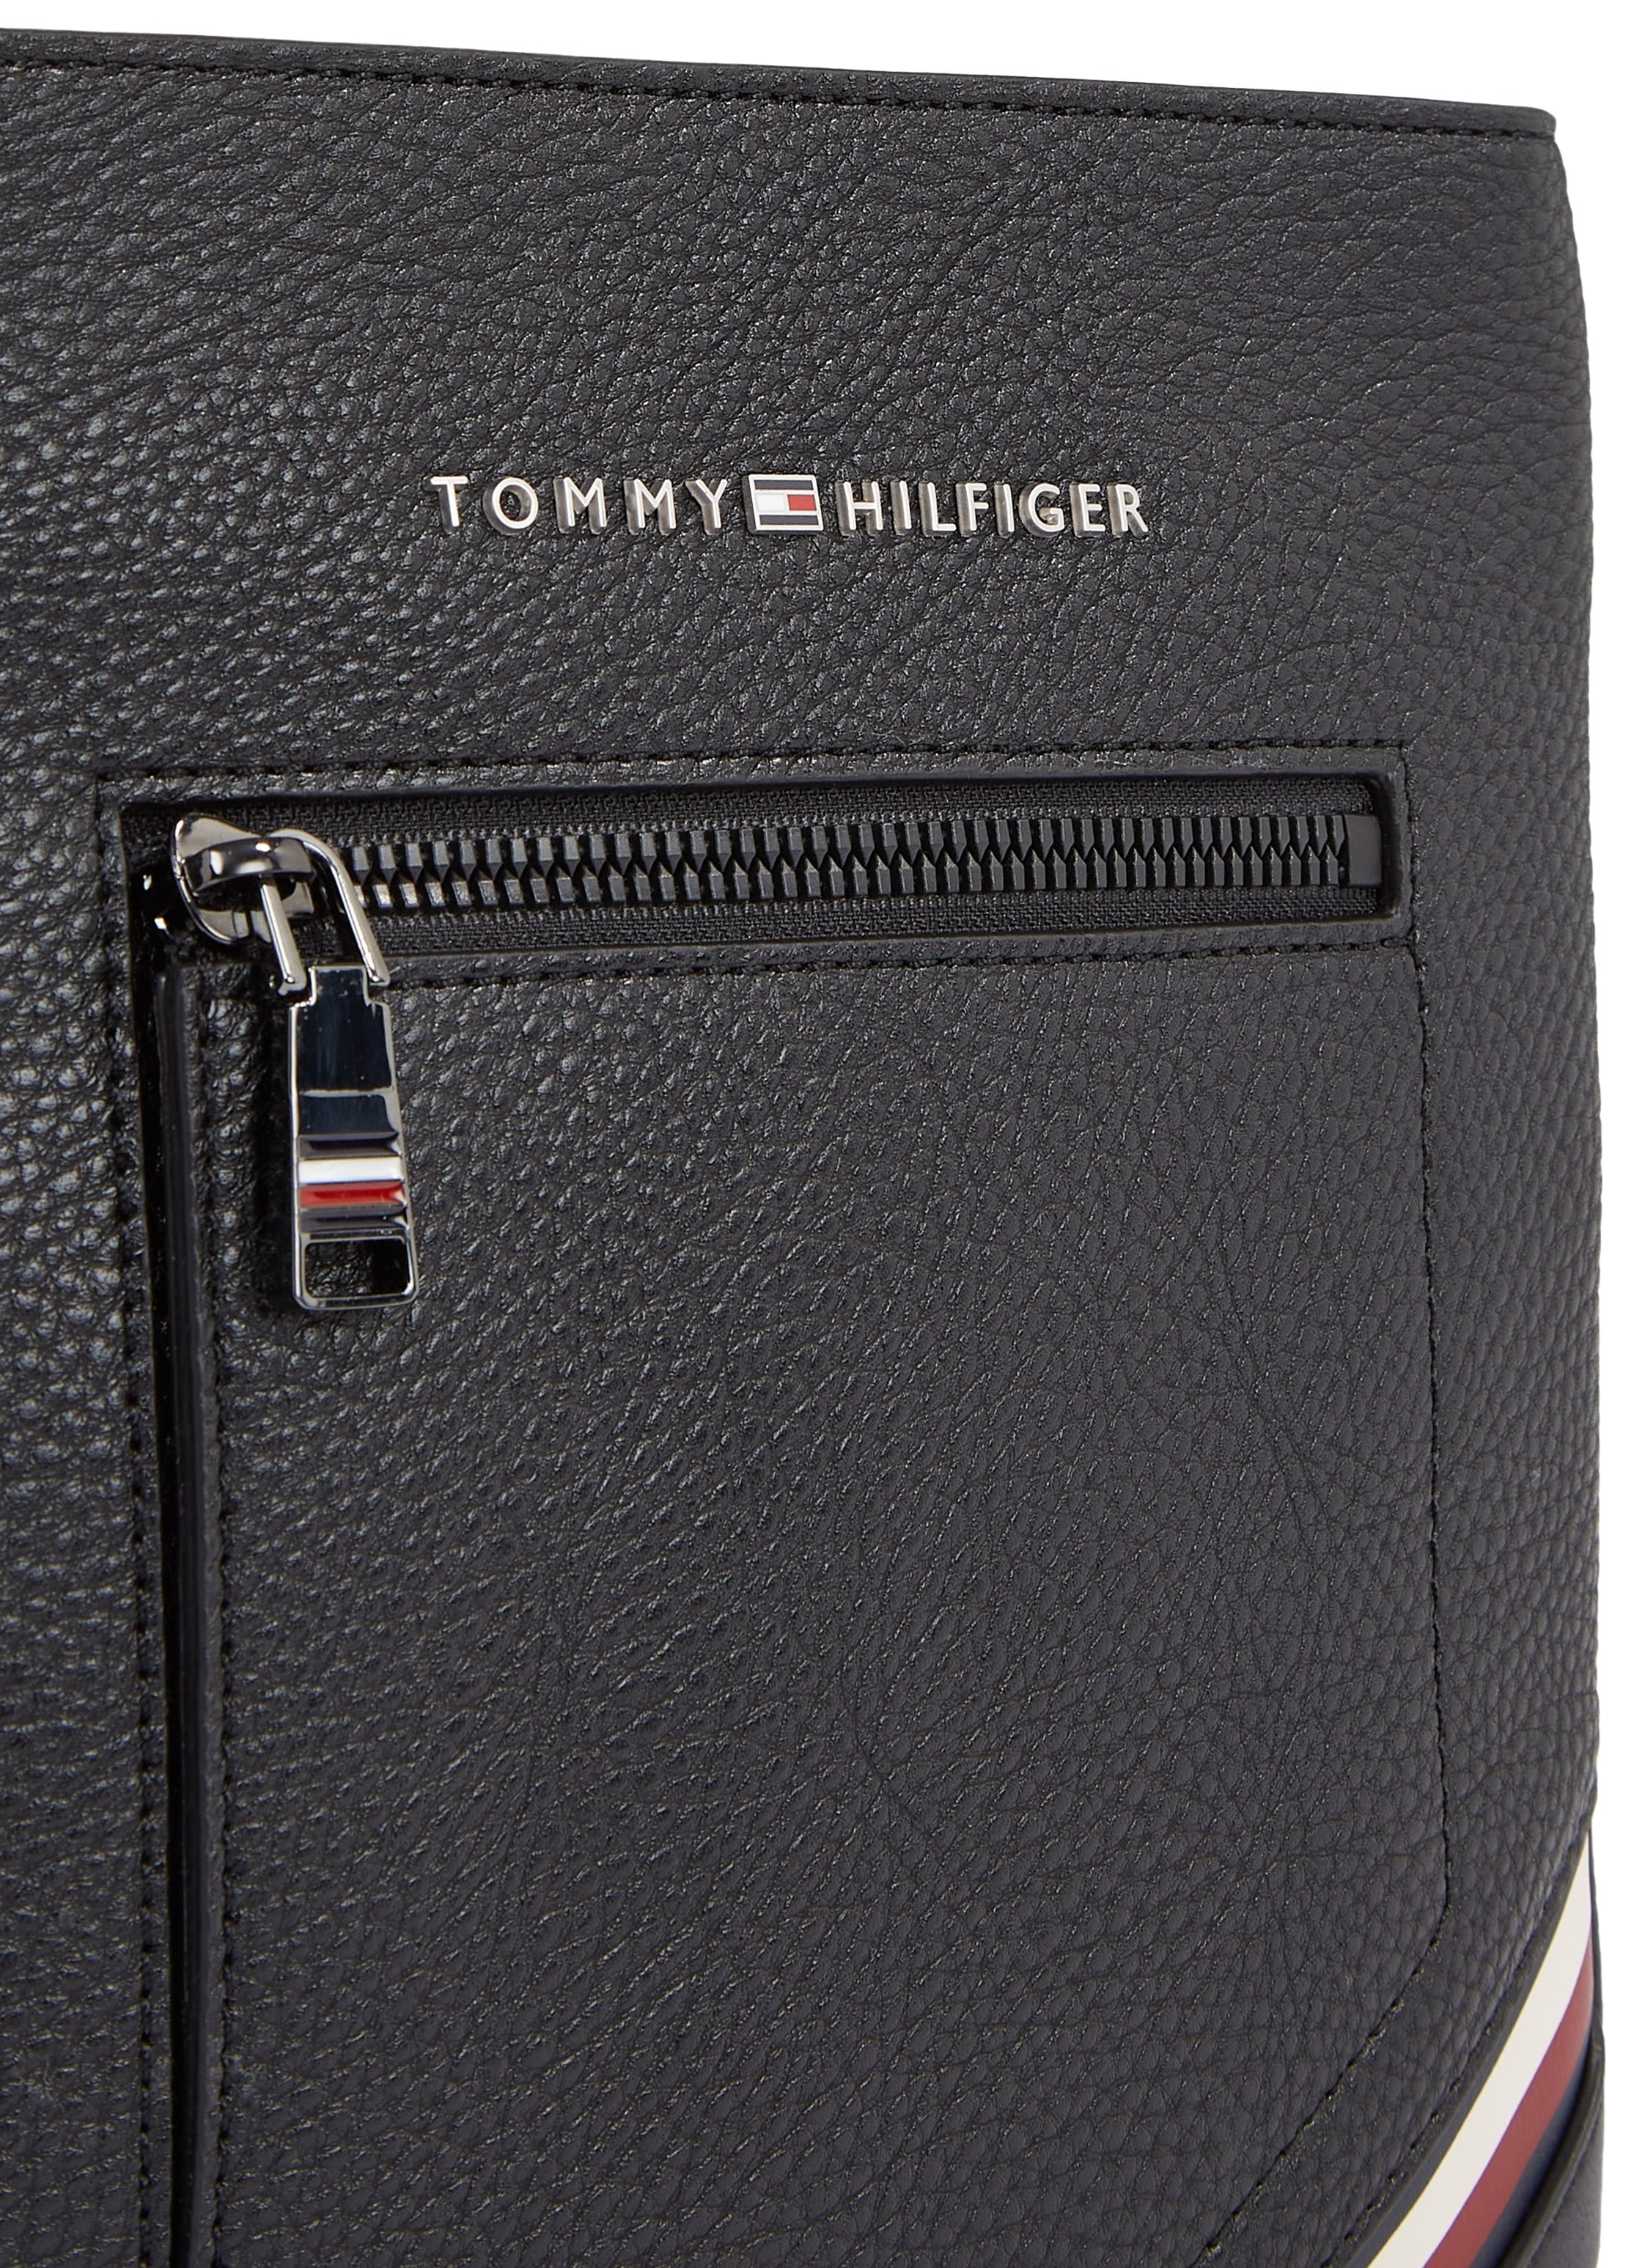 MINI im BAUR Bag Tommy Hilfiger praktischen CROSSOVER«, | CENTRAL Design kaufen Mini online »TH